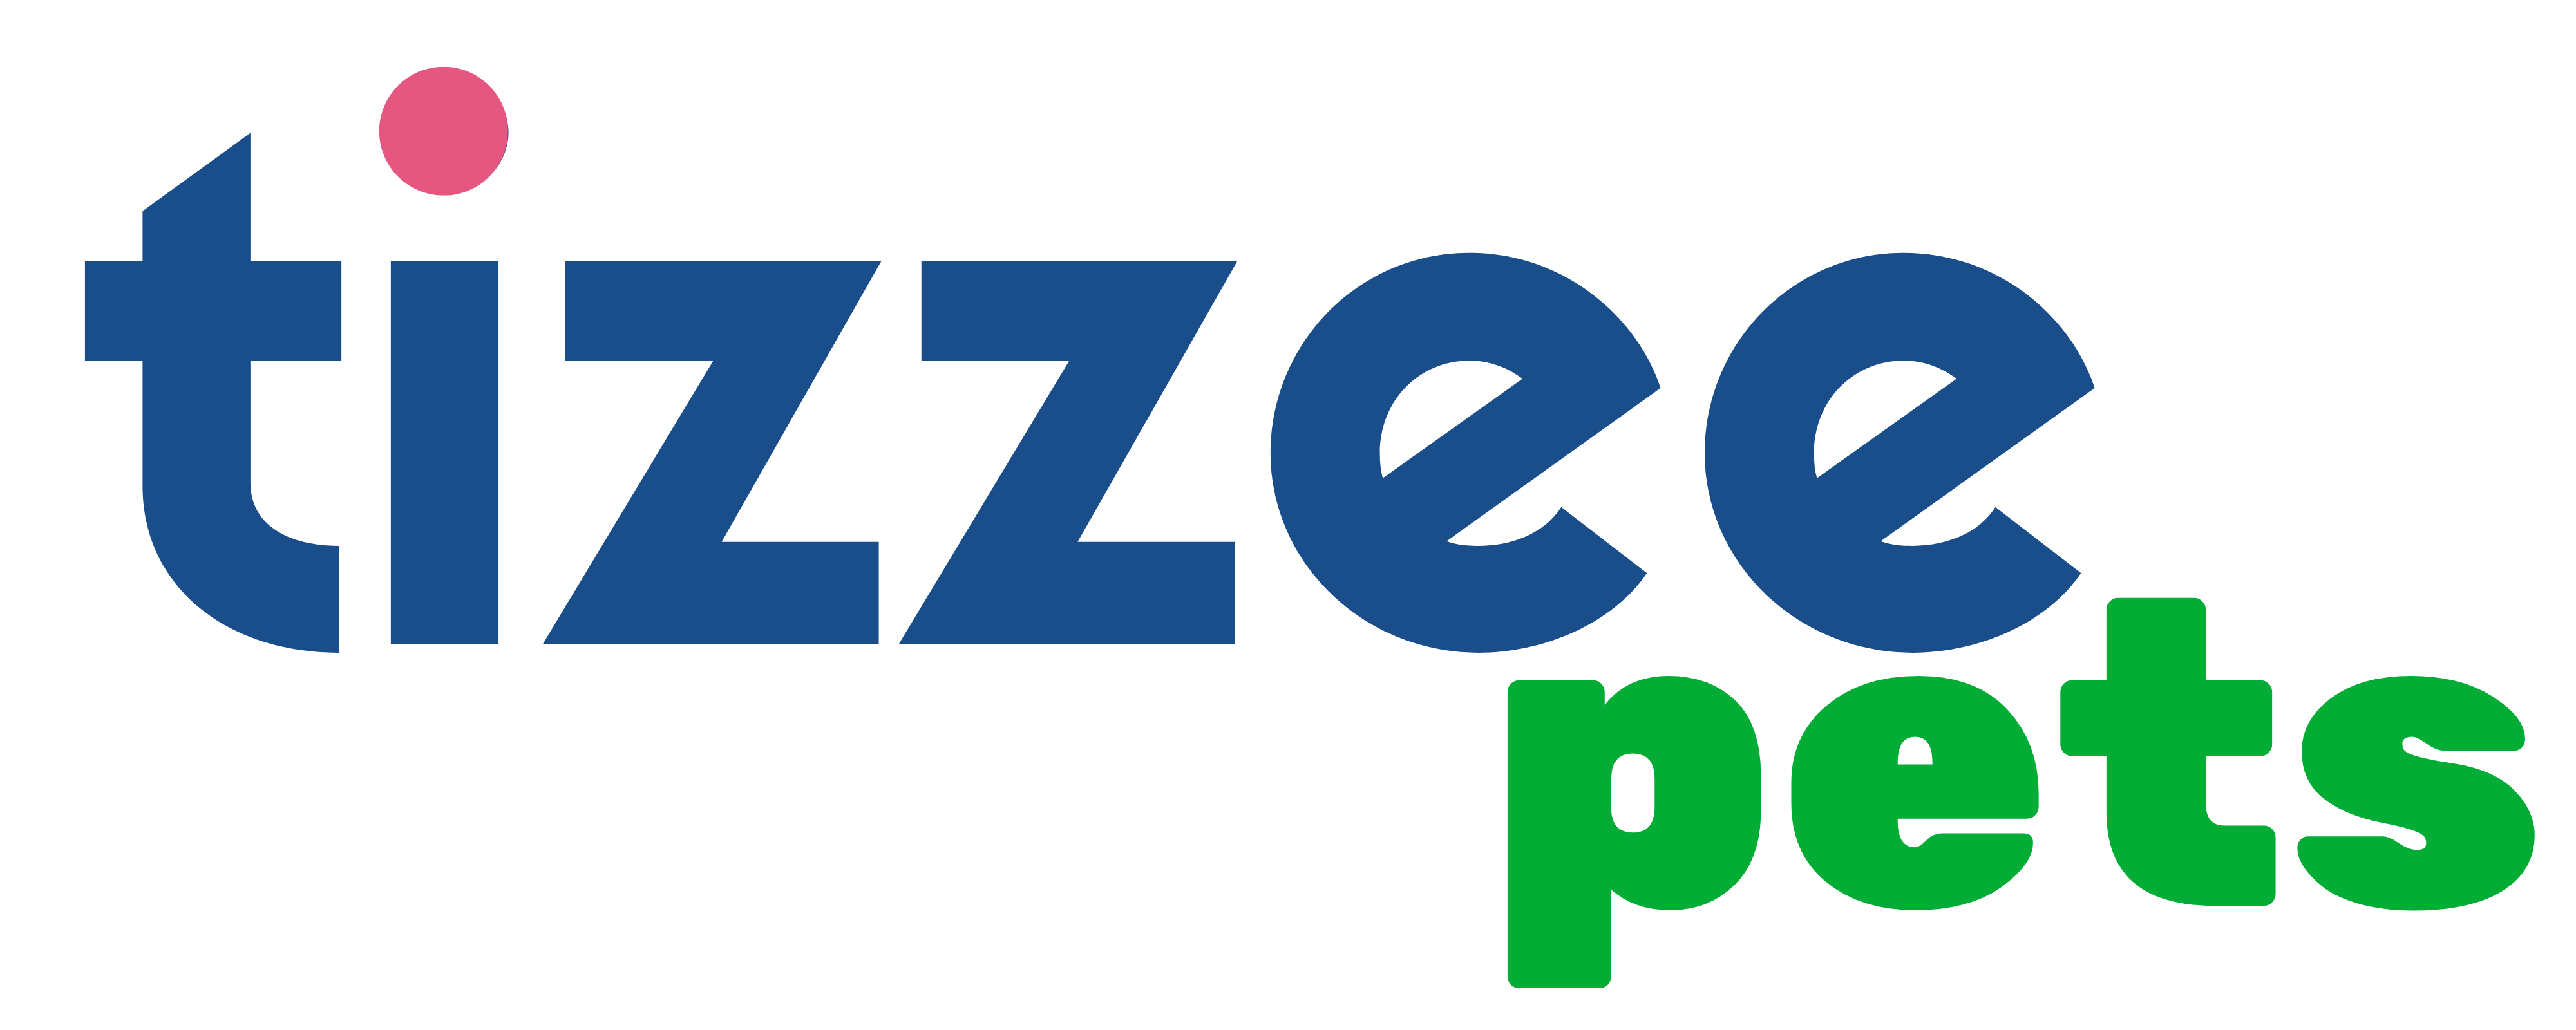 Tizzee Pets Logo